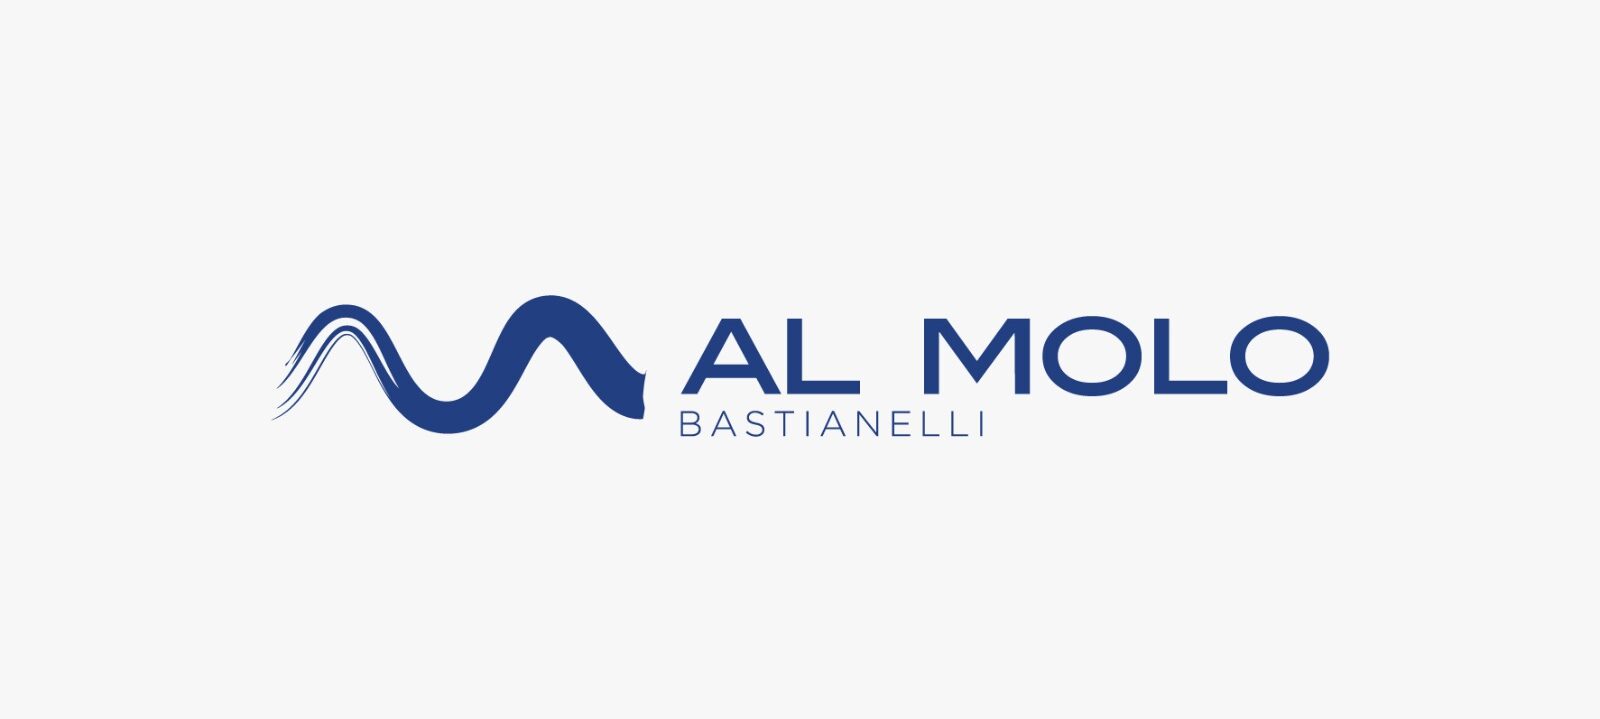 Ristorante Al Molo Bastianelli